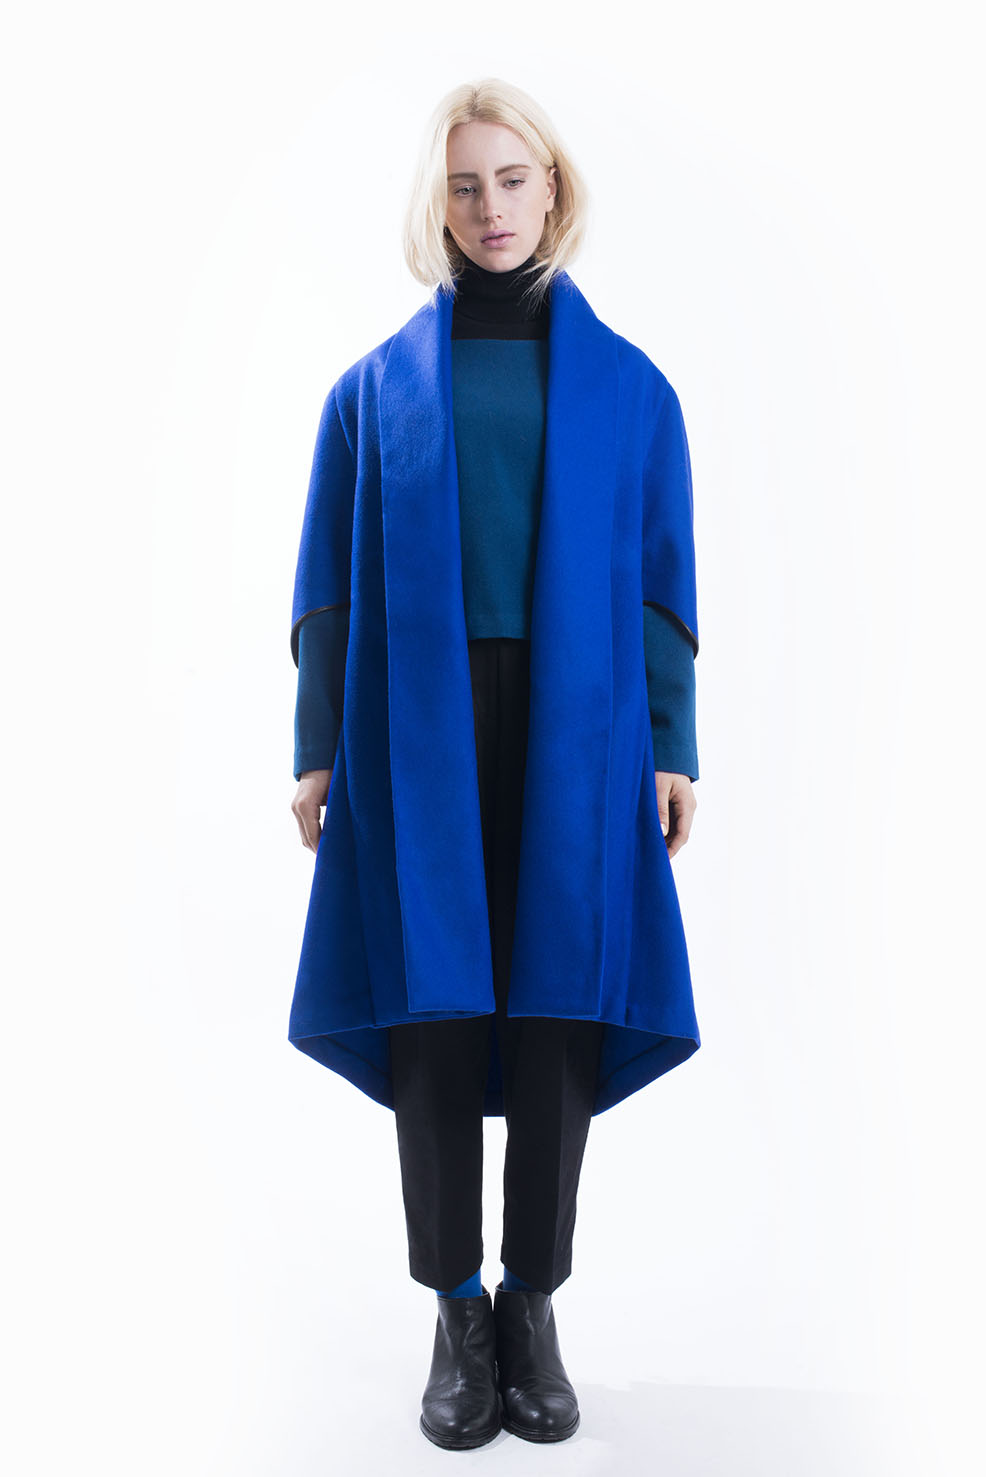 Abrigos y capas: La colección otoño/invierno 2014 de Vera Sielfeld